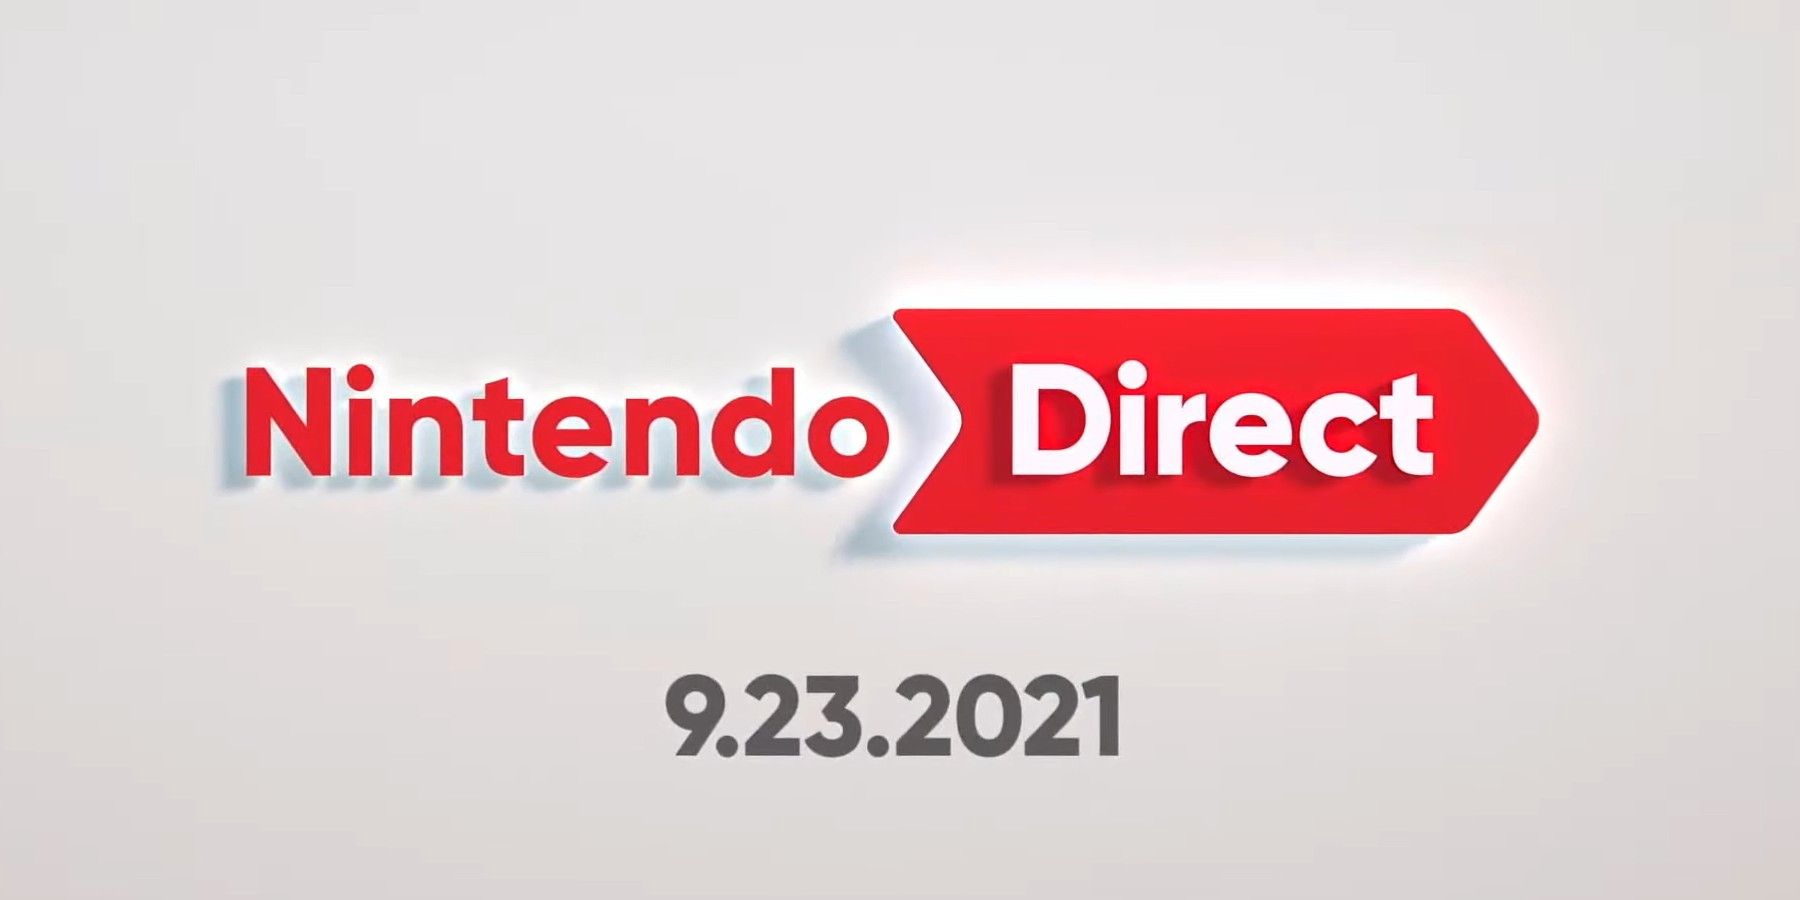 Alla Nintendo Direct -evenemang 2021 hittills